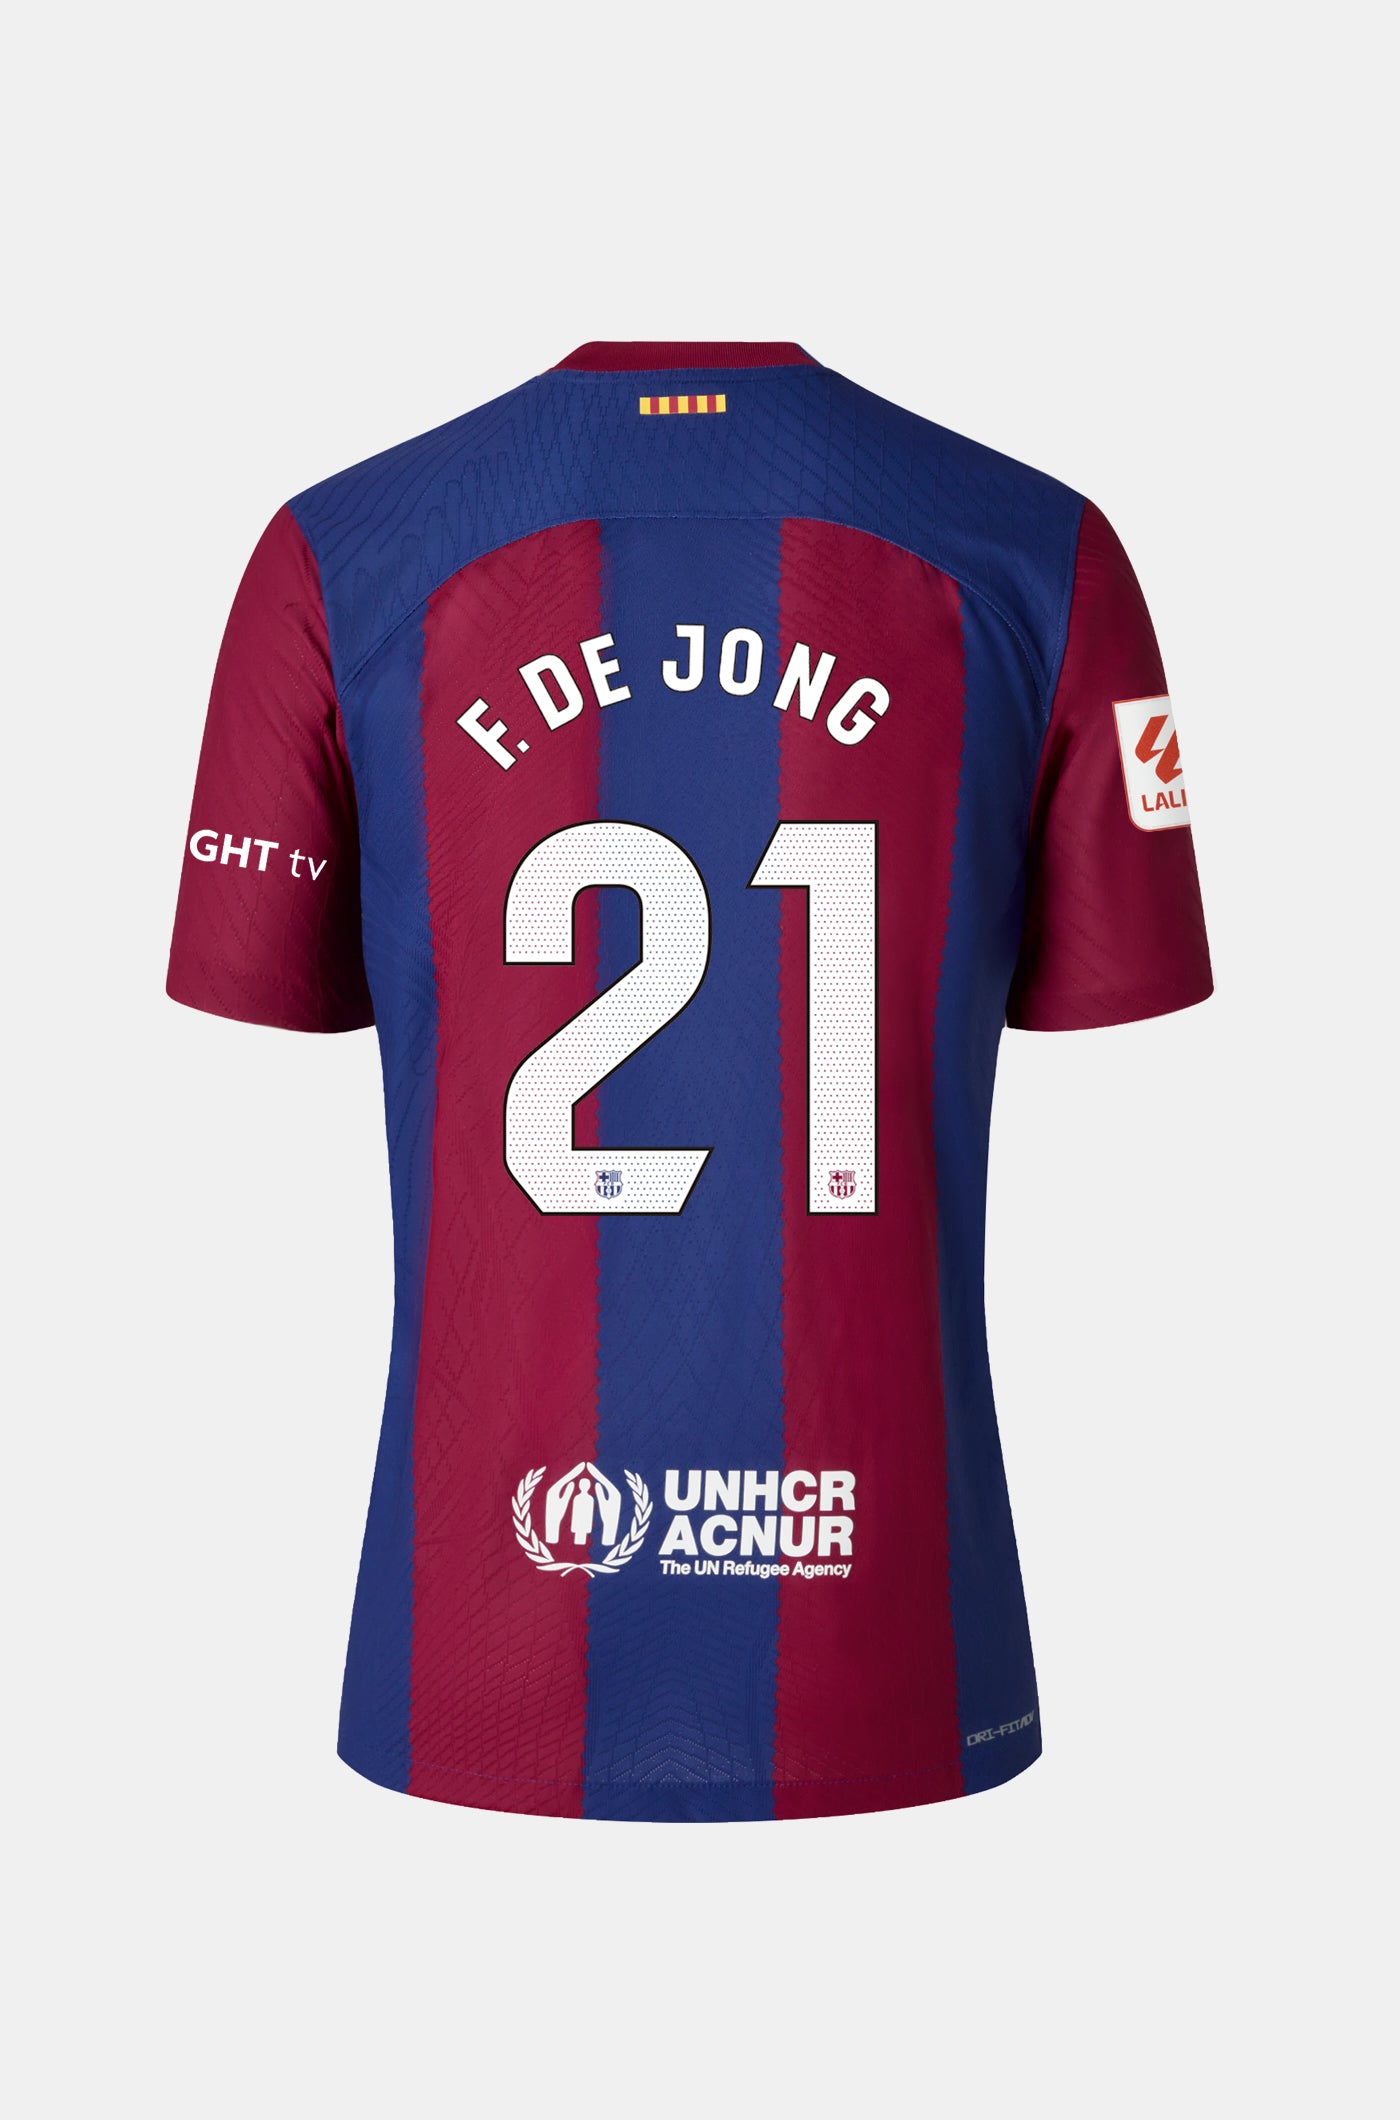 LFP Camiseta primera equipación FC Barcelona 23/24 - Mujer - F. DE JONG